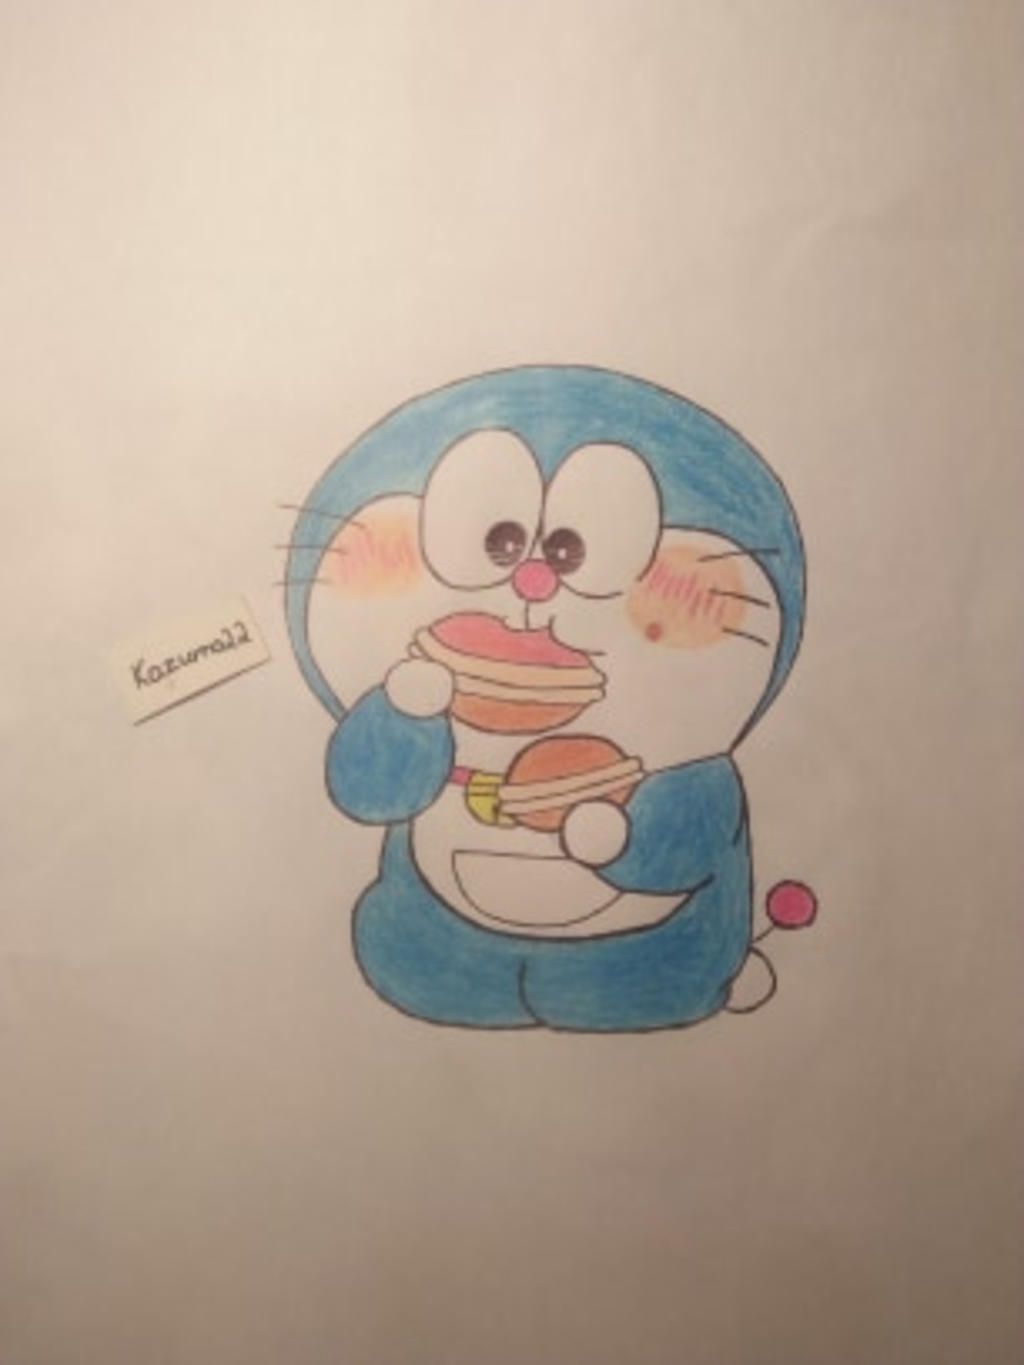 Lấy cảm hứng từ bộ phim hoạt hình Doraemon, vẽ anime ảnh Doraemon chibi đang trở thành xu hướng làm mới cho cộng đồng vẽ tranh. Vẽ anime và vẽ chibi là hai chuẩn mực đẹp và nổi tiếng trên thế giới mà bạn không thể bỏ qua. Hãy khám phá sự kết hợp đầy sáng tạo khi vẽ anime ảnh Doraemon chibi để tạo ra những tác phẩm nghệ thuật đầy màu sắc và độc đáo.